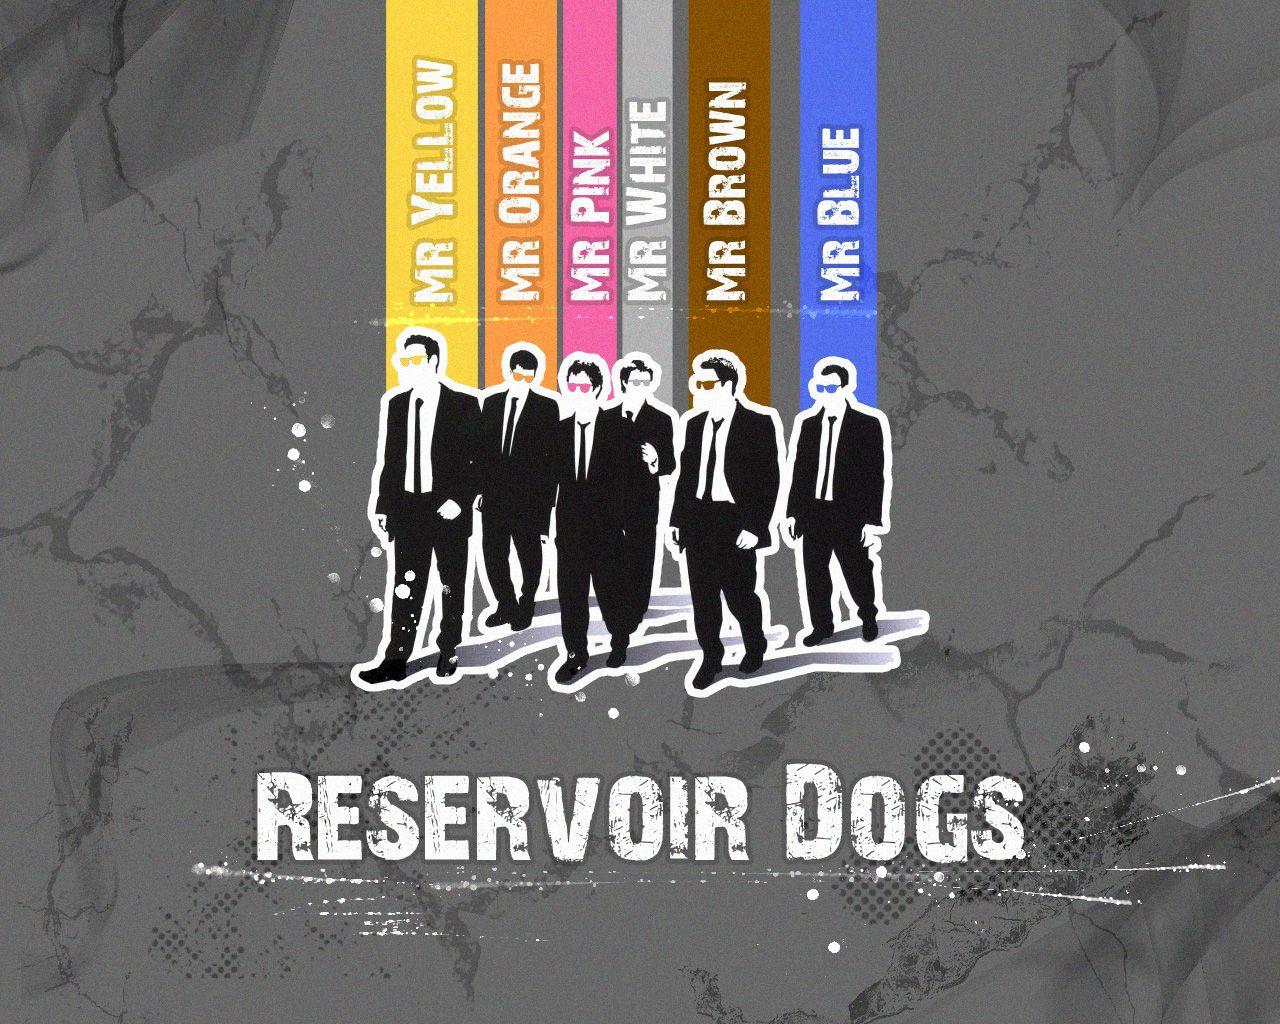 Reservoir Dogs. TV & Film. Reservoir dogs, Quentin